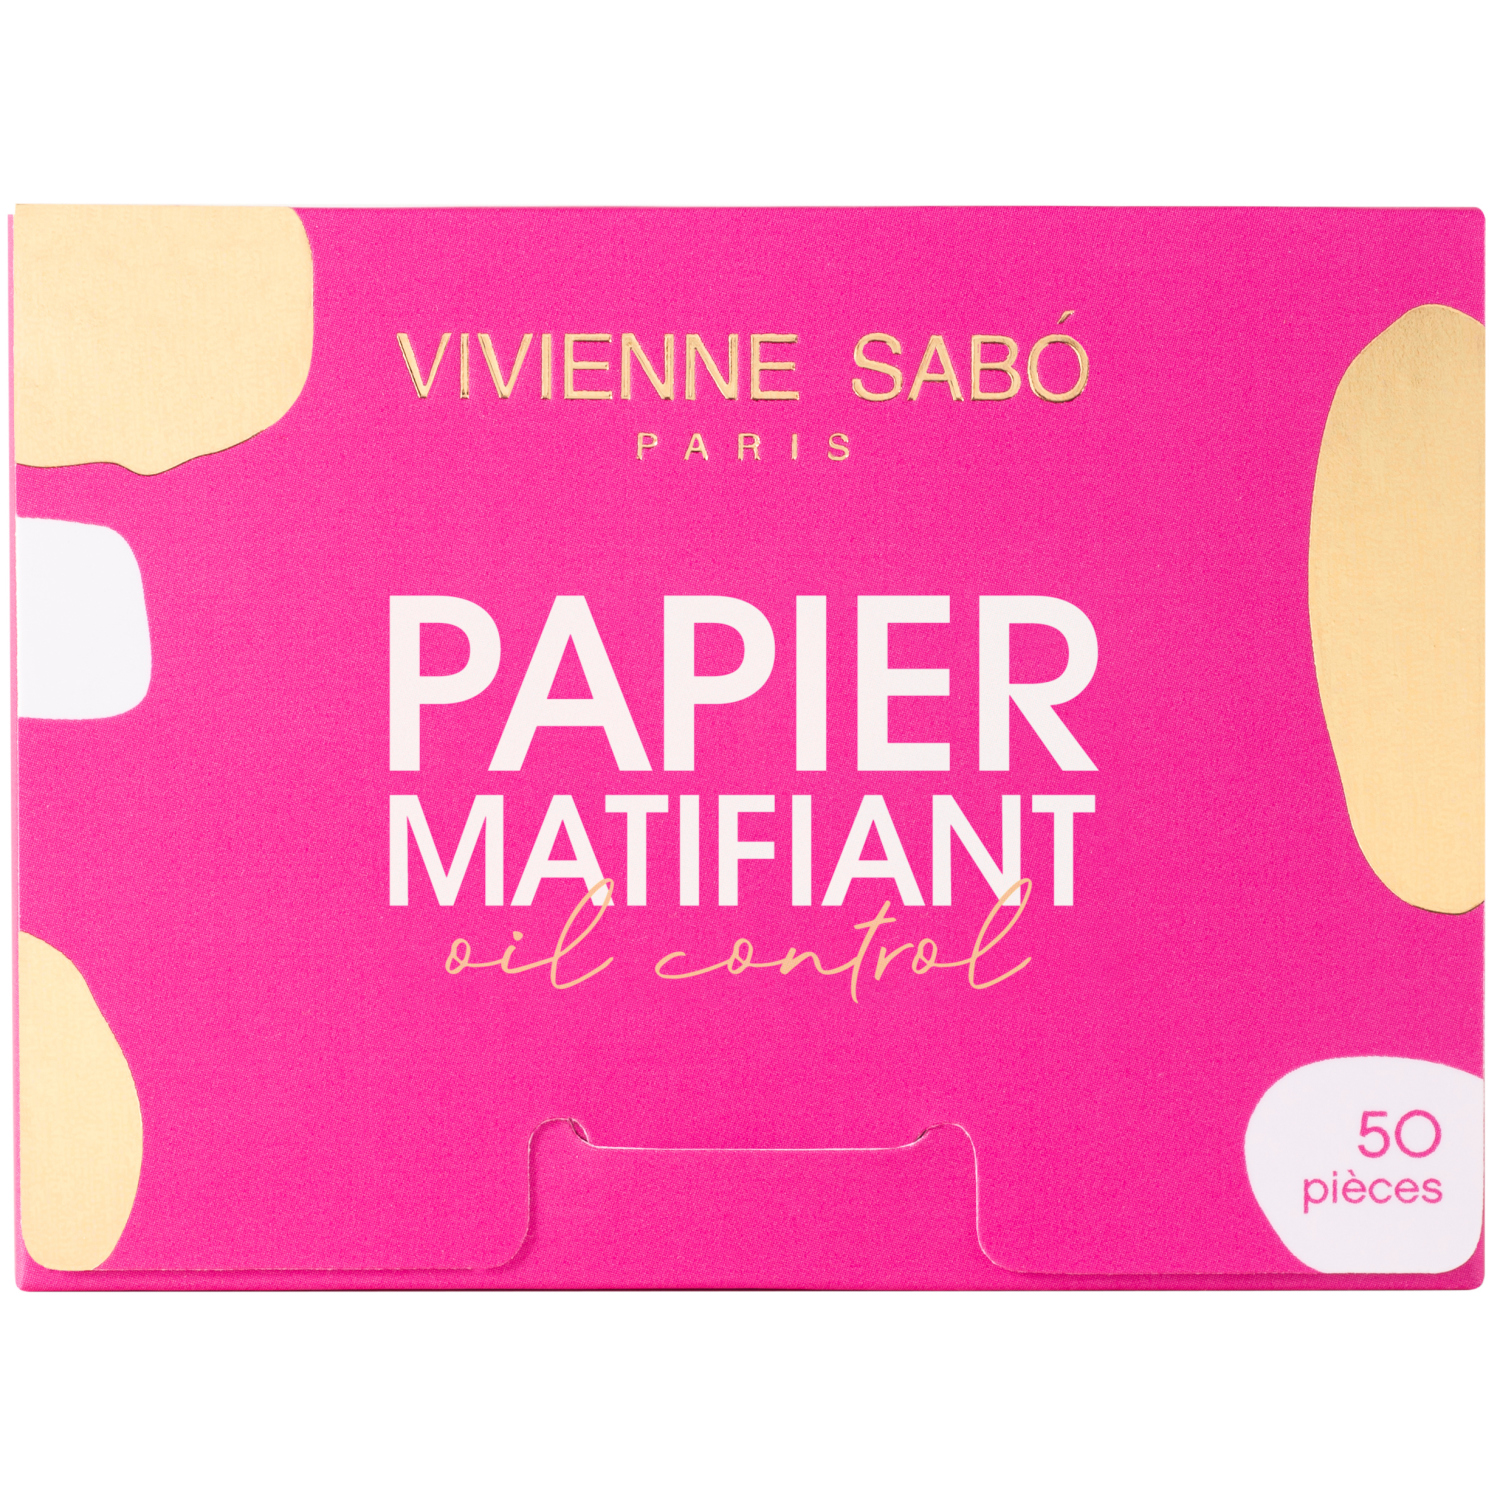 Матирующие салфетки Vivienne Sabo Papier Matifiant, моментальное удаление жирного блеска, прозрачно-розоватые, 50шт. матирующие салфетки для лица grl pwr 50 шт